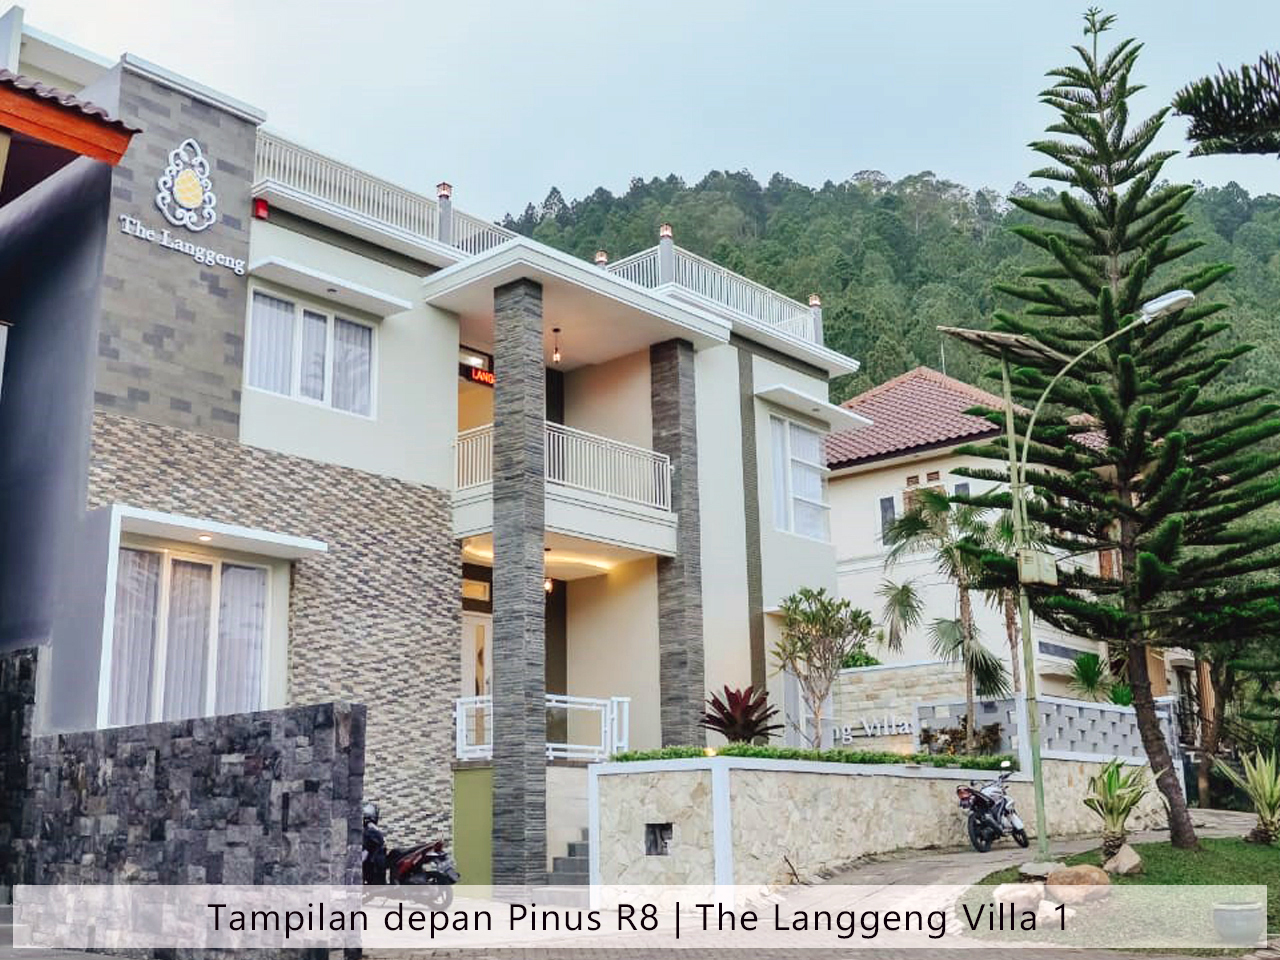 the langgeng villa 1